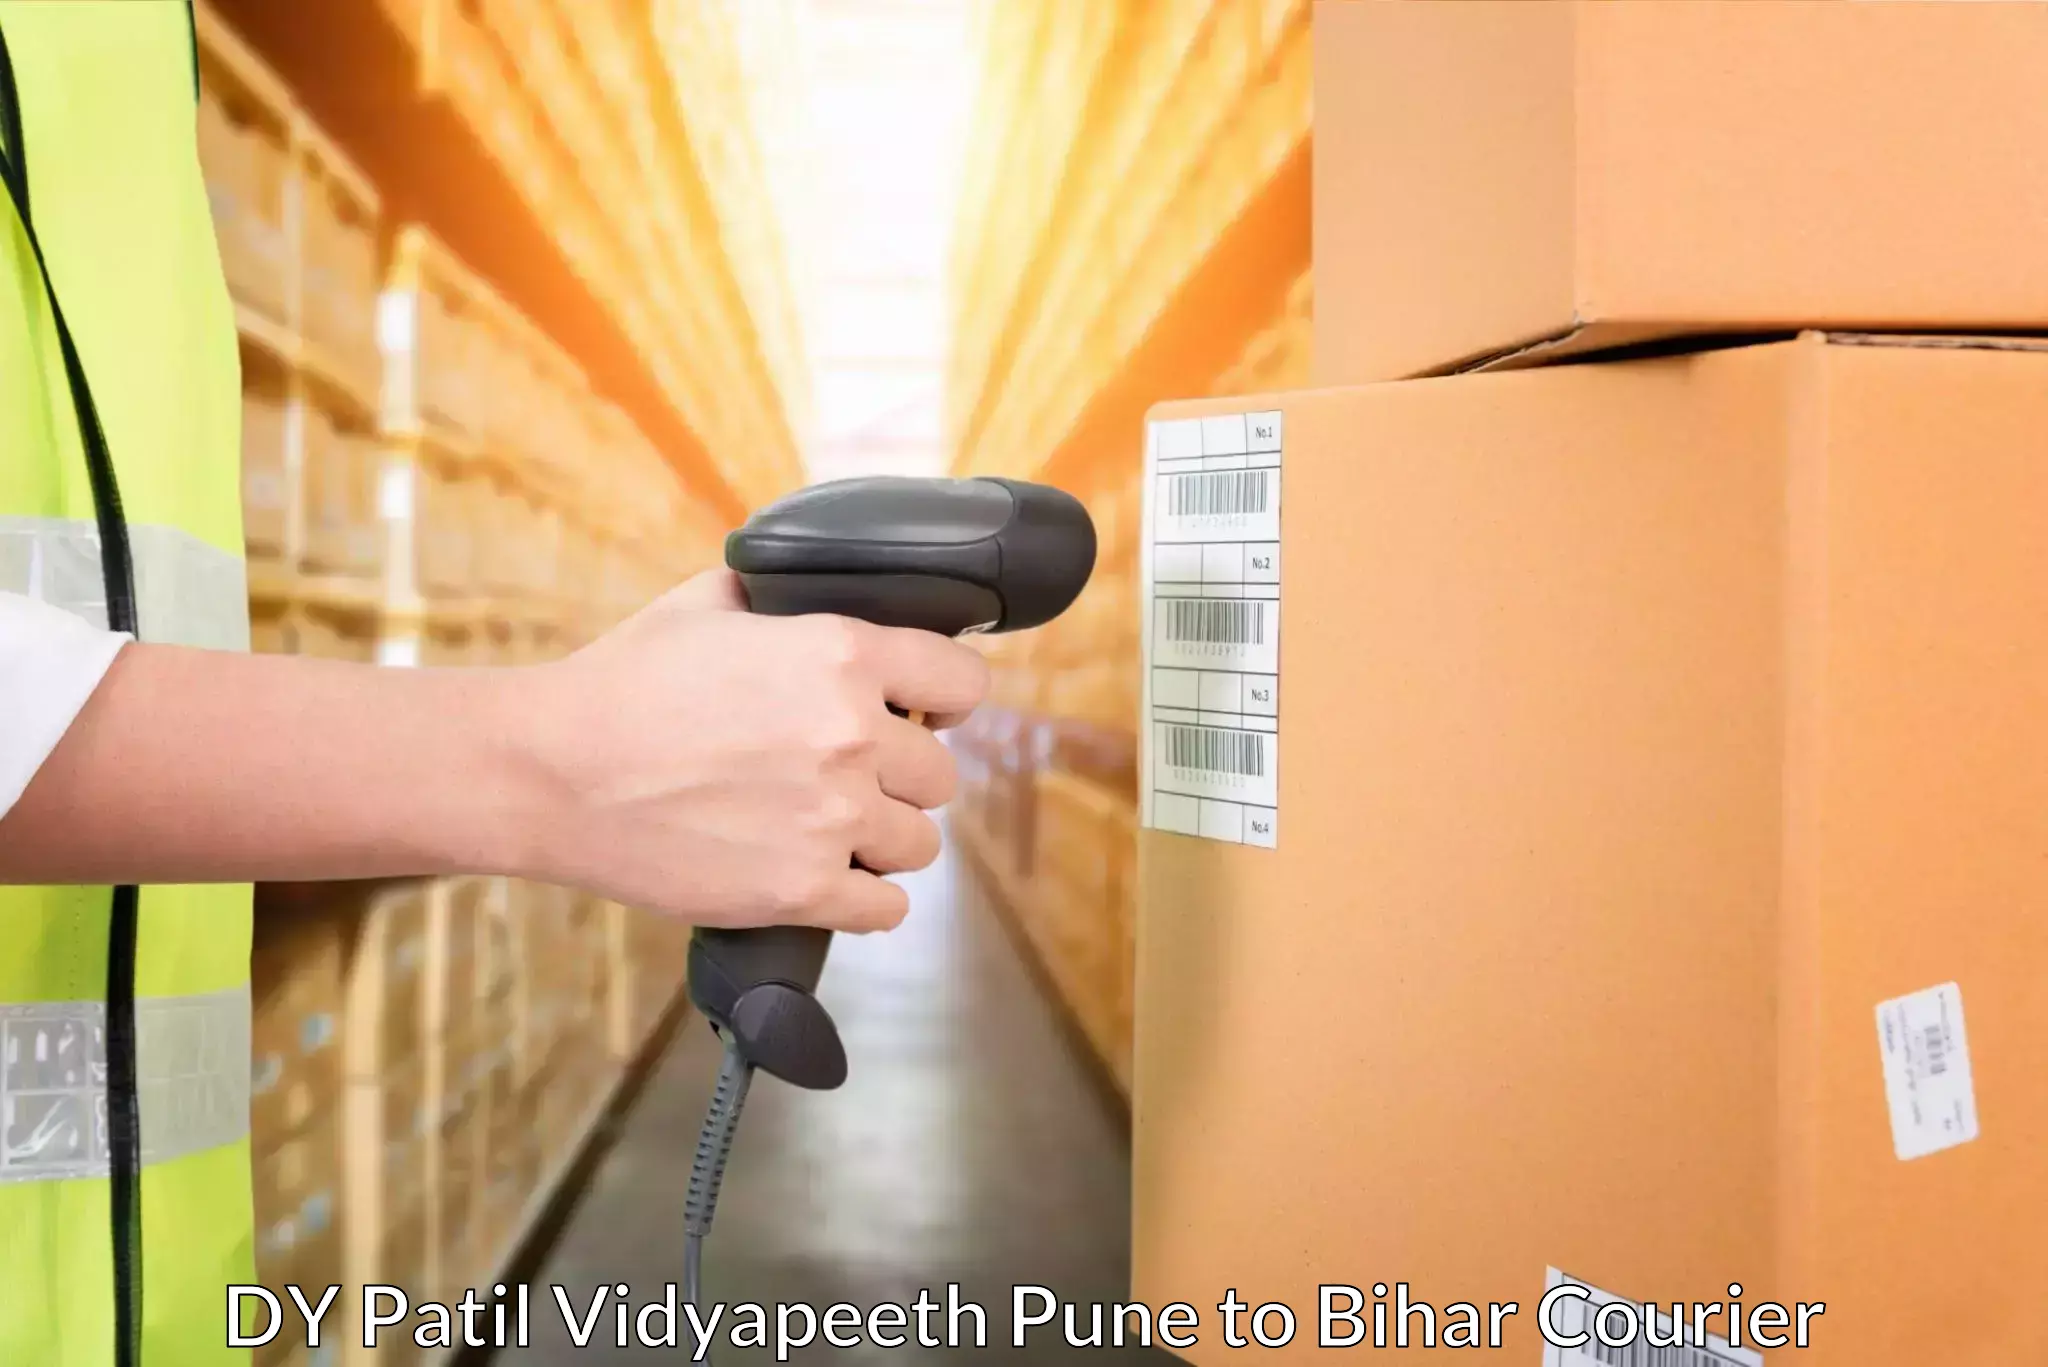 Professional parcel services DY Patil Vidyapeeth Pune to Mahnar Bazar